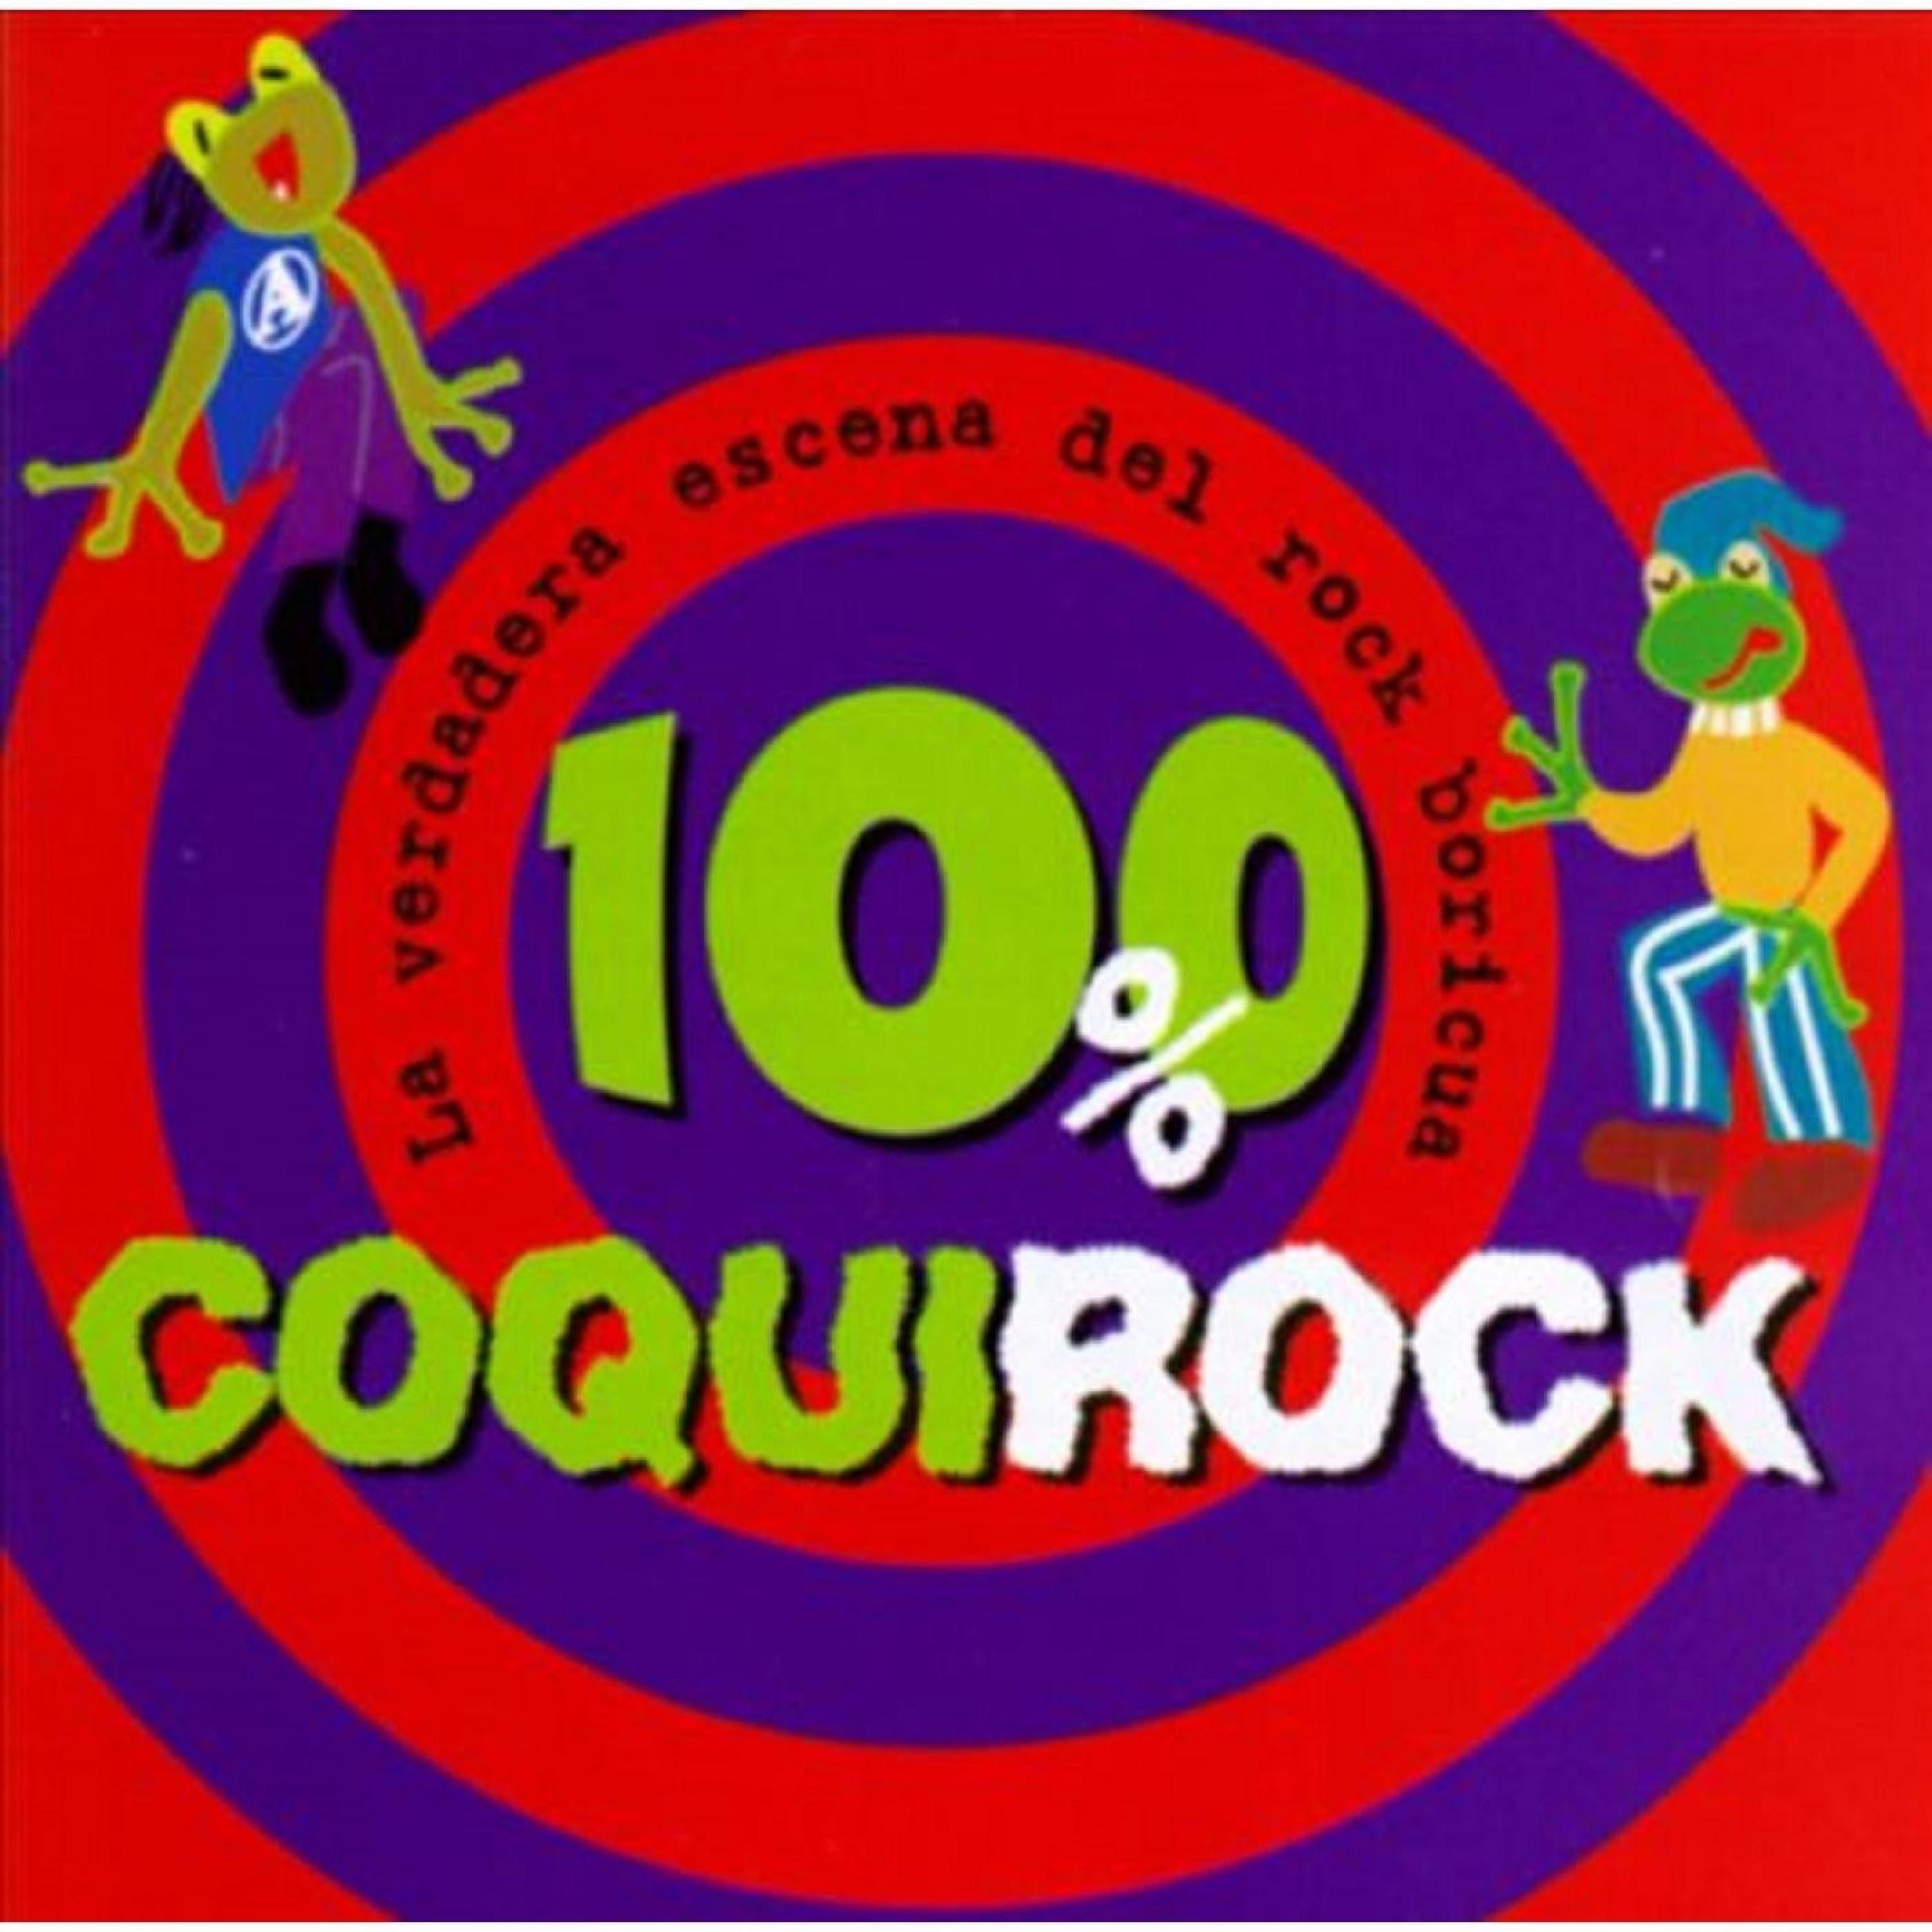 100% Coqui Rock